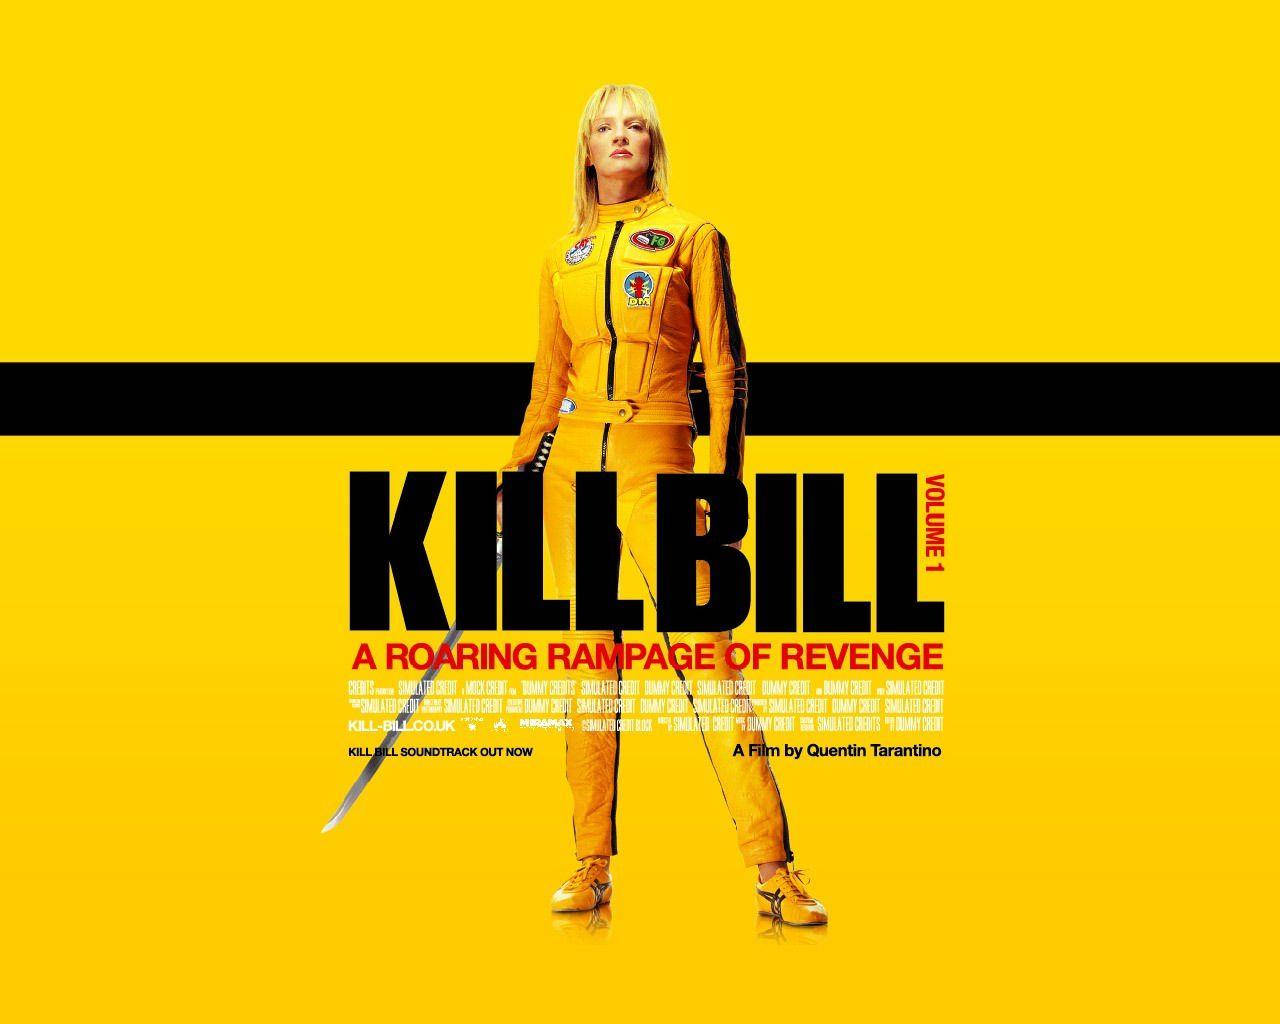 Kill Bill Movie Poster